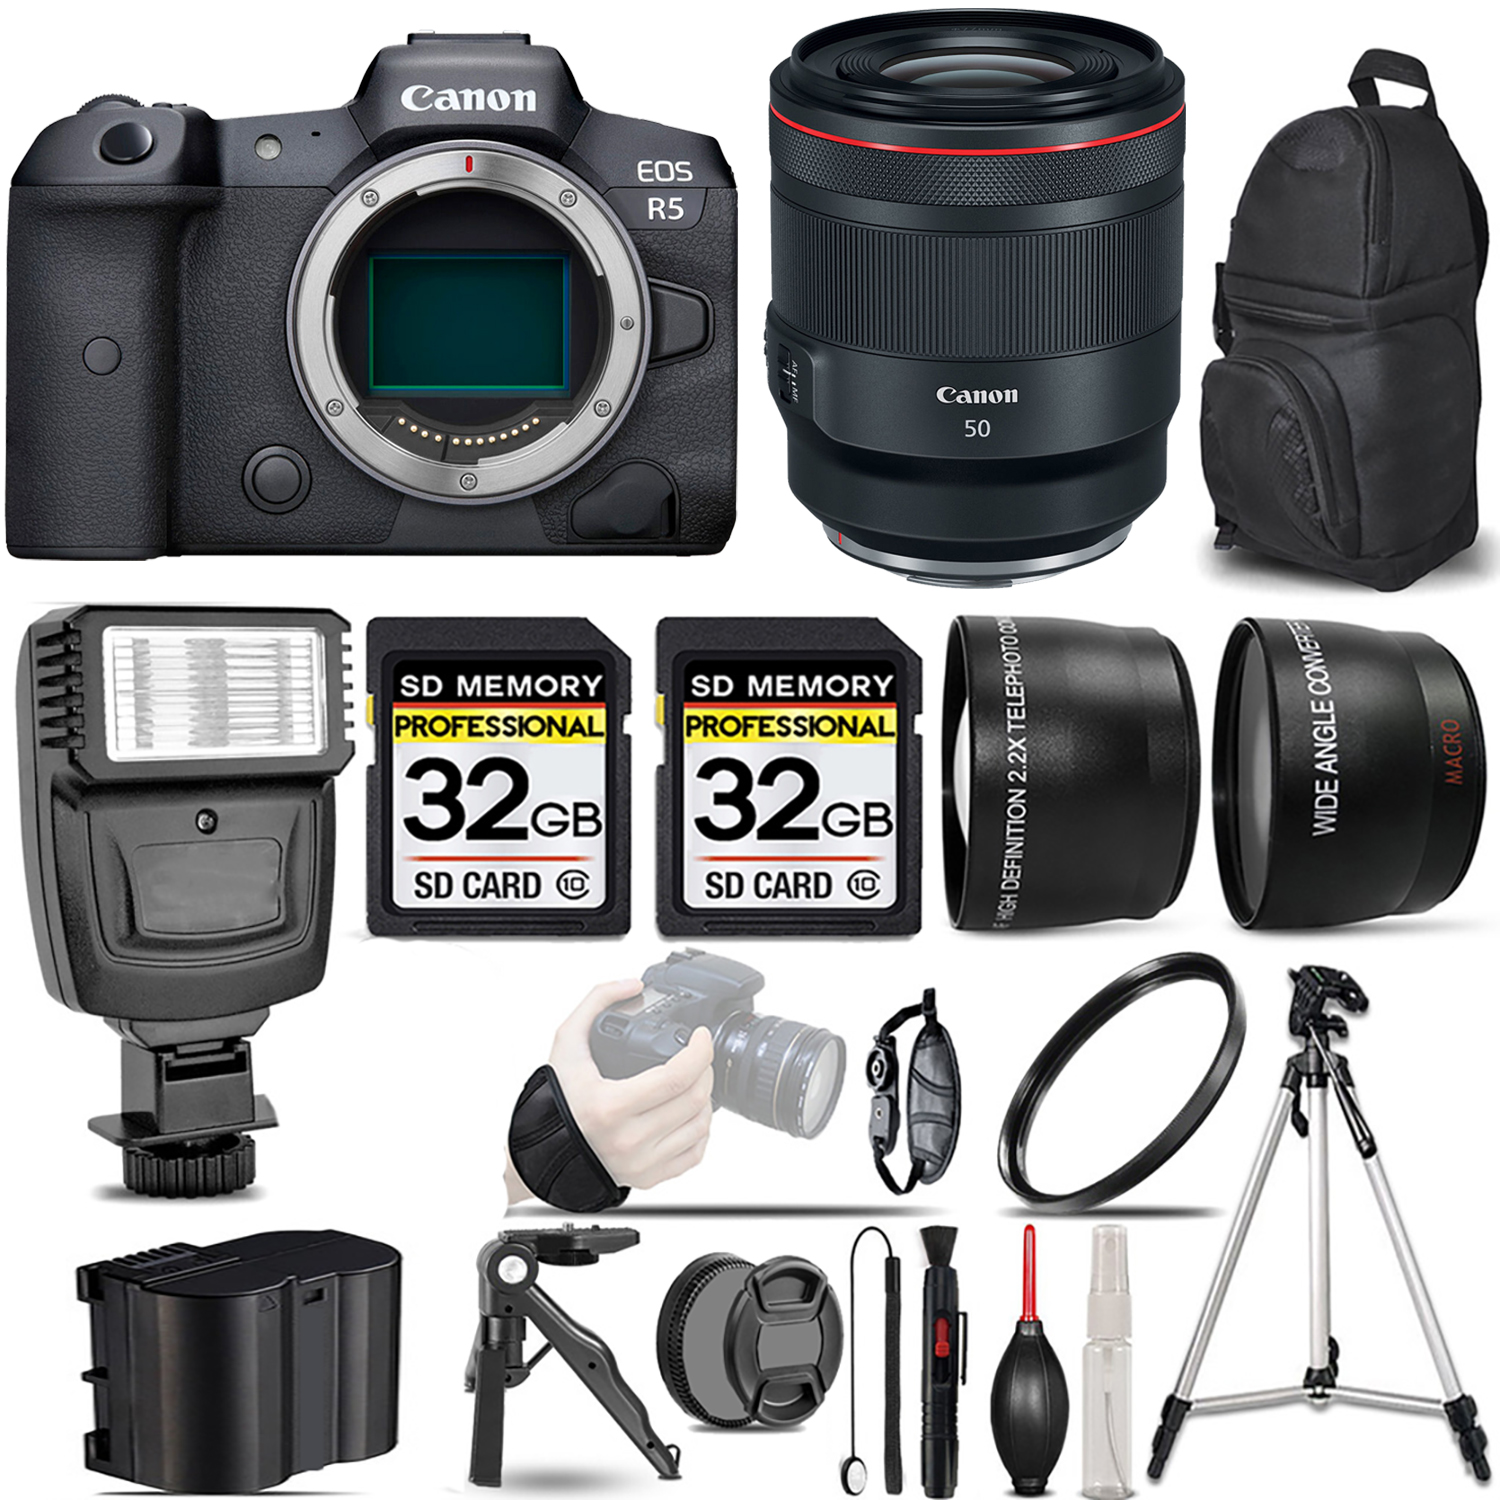 EOS R5 Mirrorless Camera + 50mm f/1.2 L USM Lens + Flash + 64GB - Kit *FREE SHIPPING*